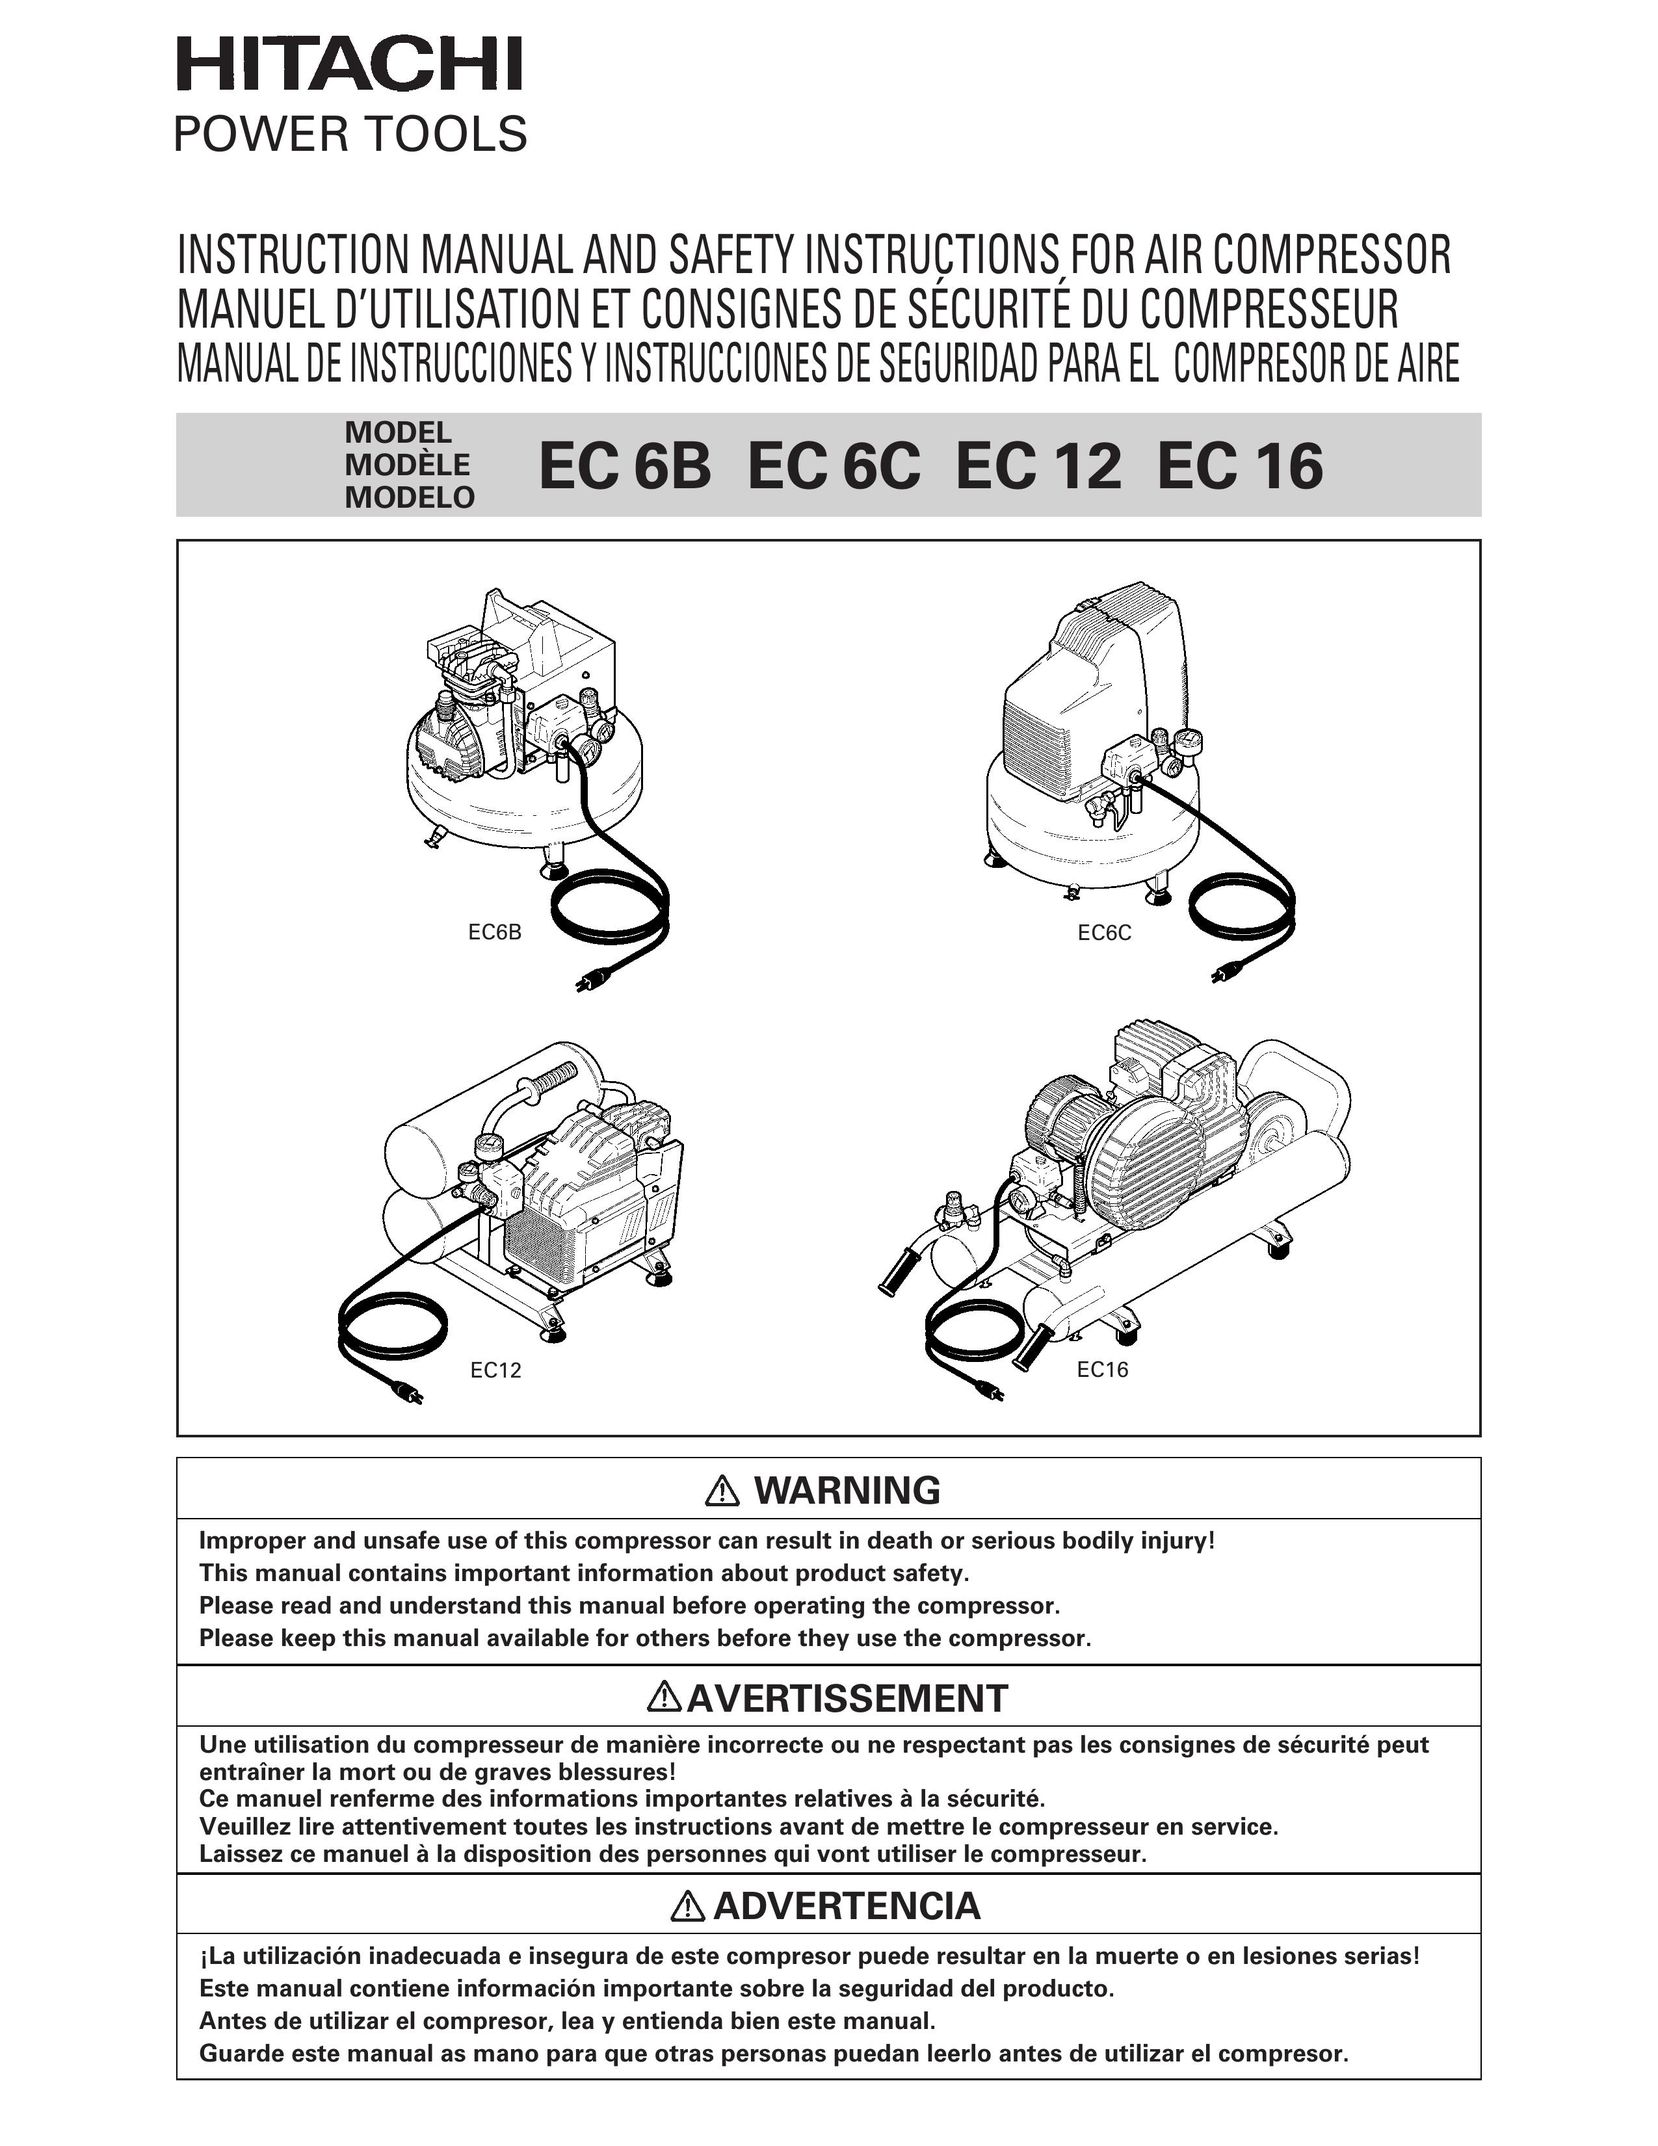 Hitachi EC 6B Air Compressor User Manual